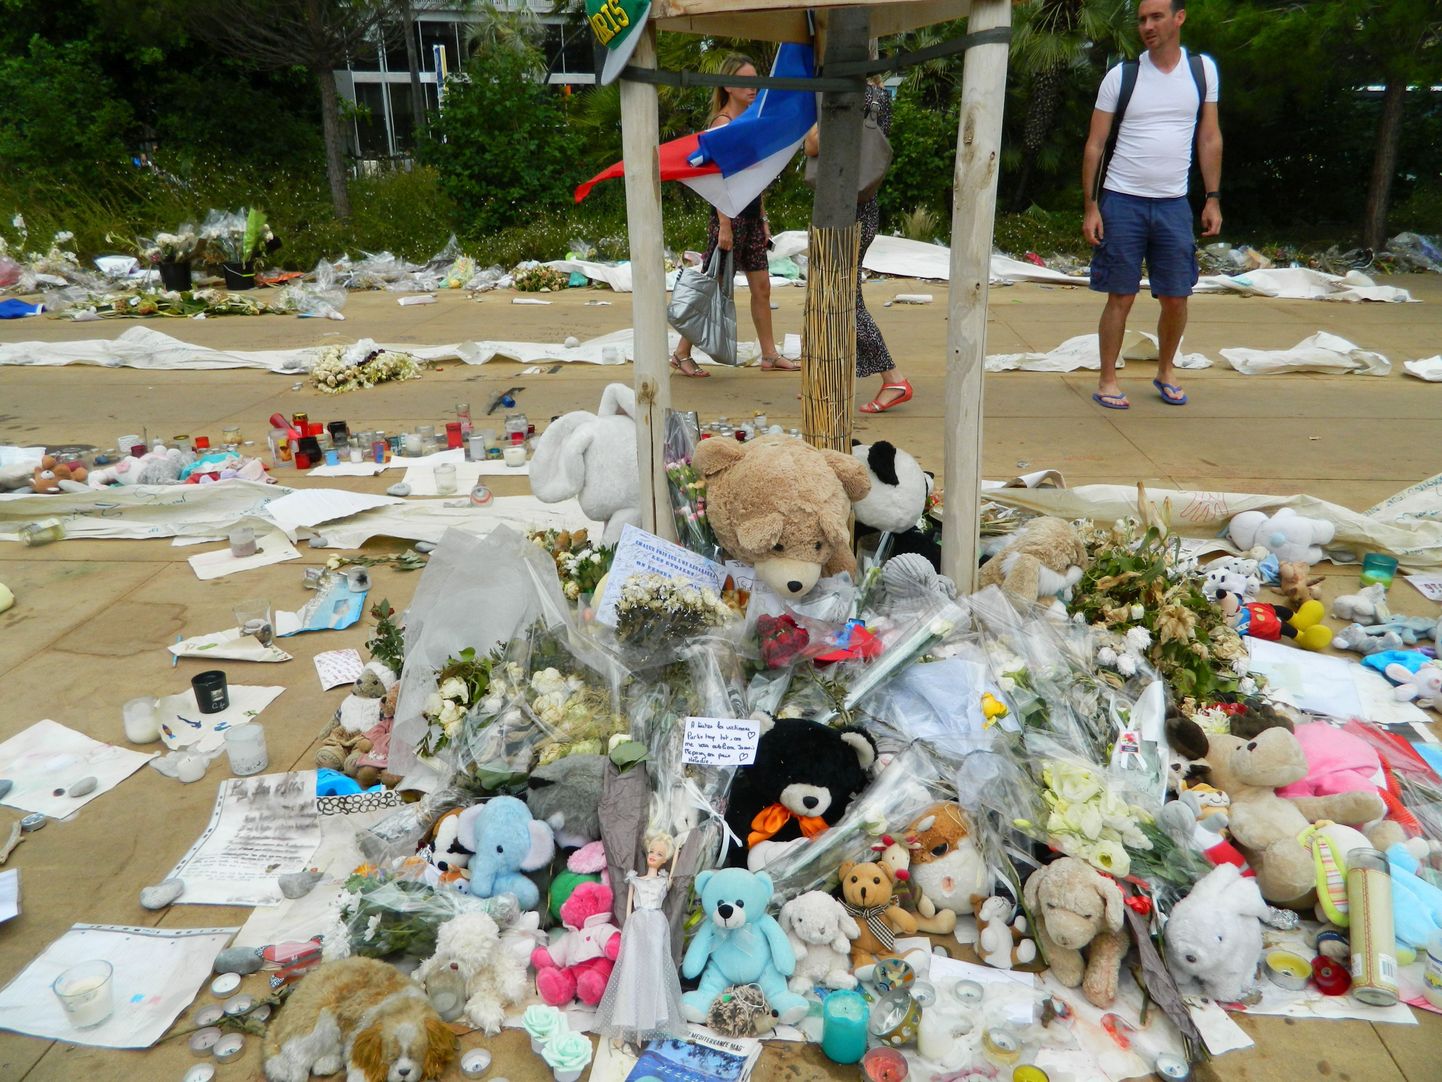 В память о погибших и пострадавших во время теракта на Английской набережной в Ницце люди приносят к месту трагедии цветы, свечи, письма и мягкие игрушки, в основном медвежат.